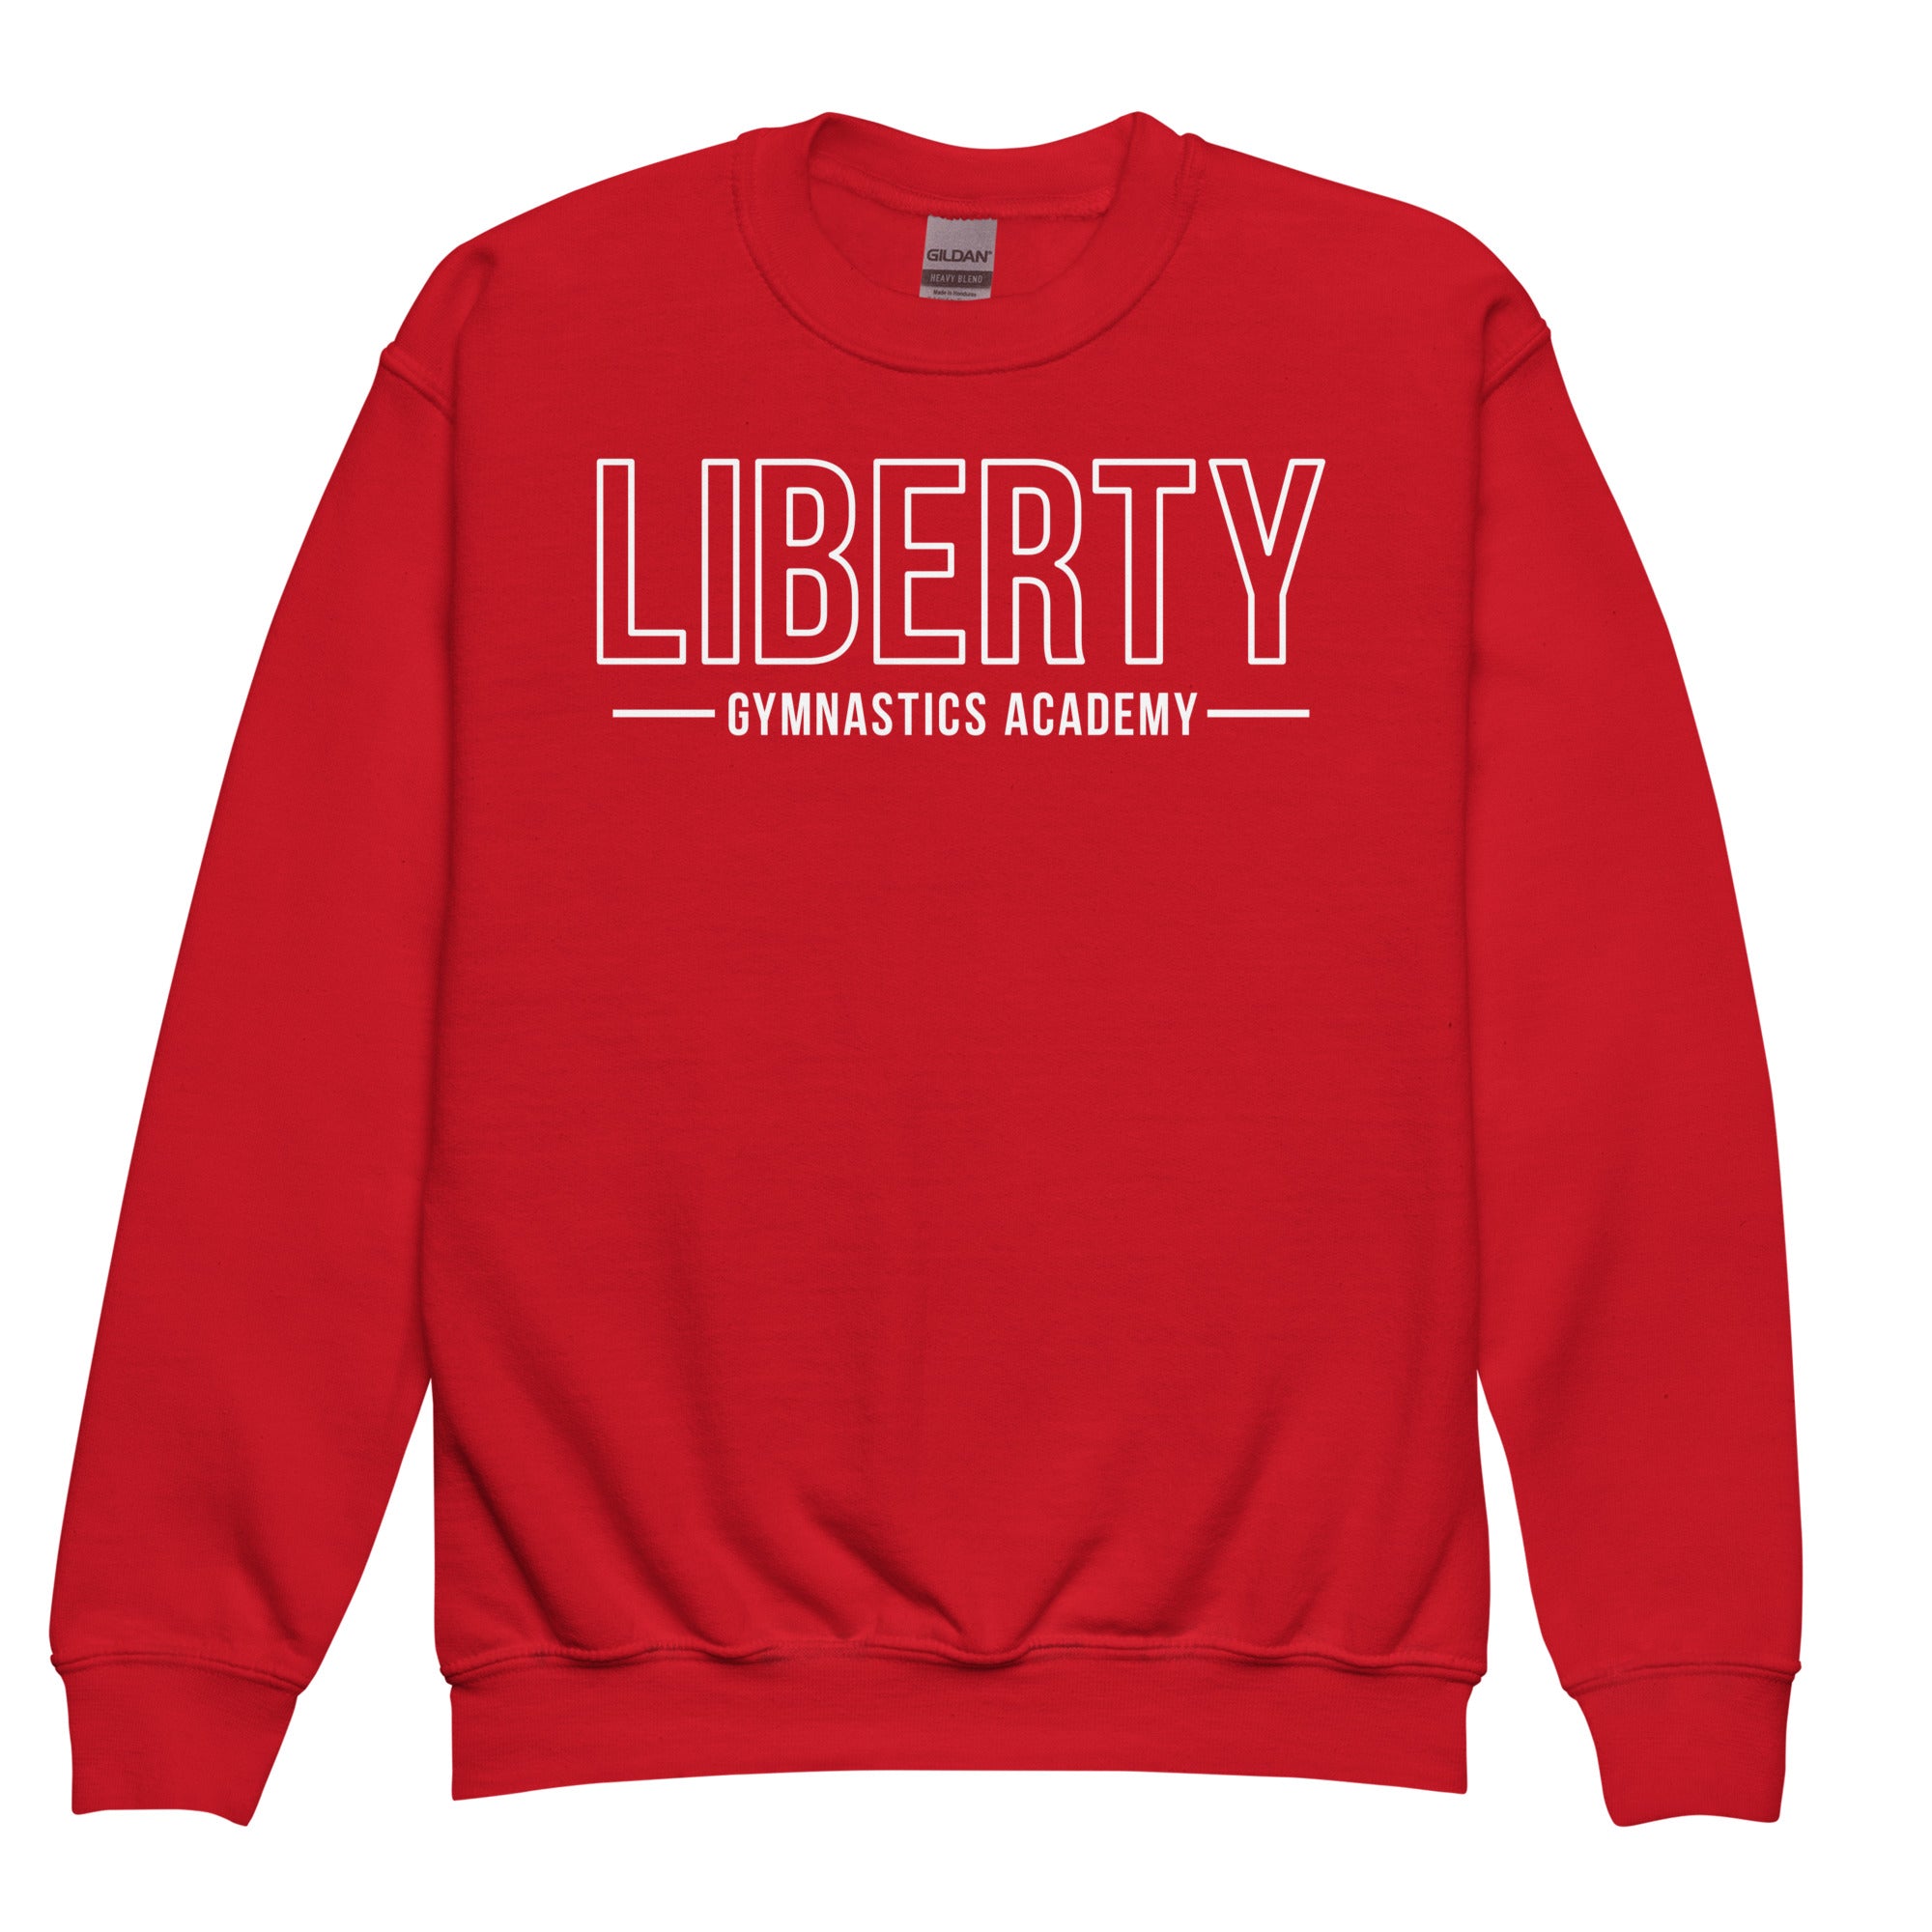 Liberty Gymnastics Academy Youth Crew Neck Sweatshirt